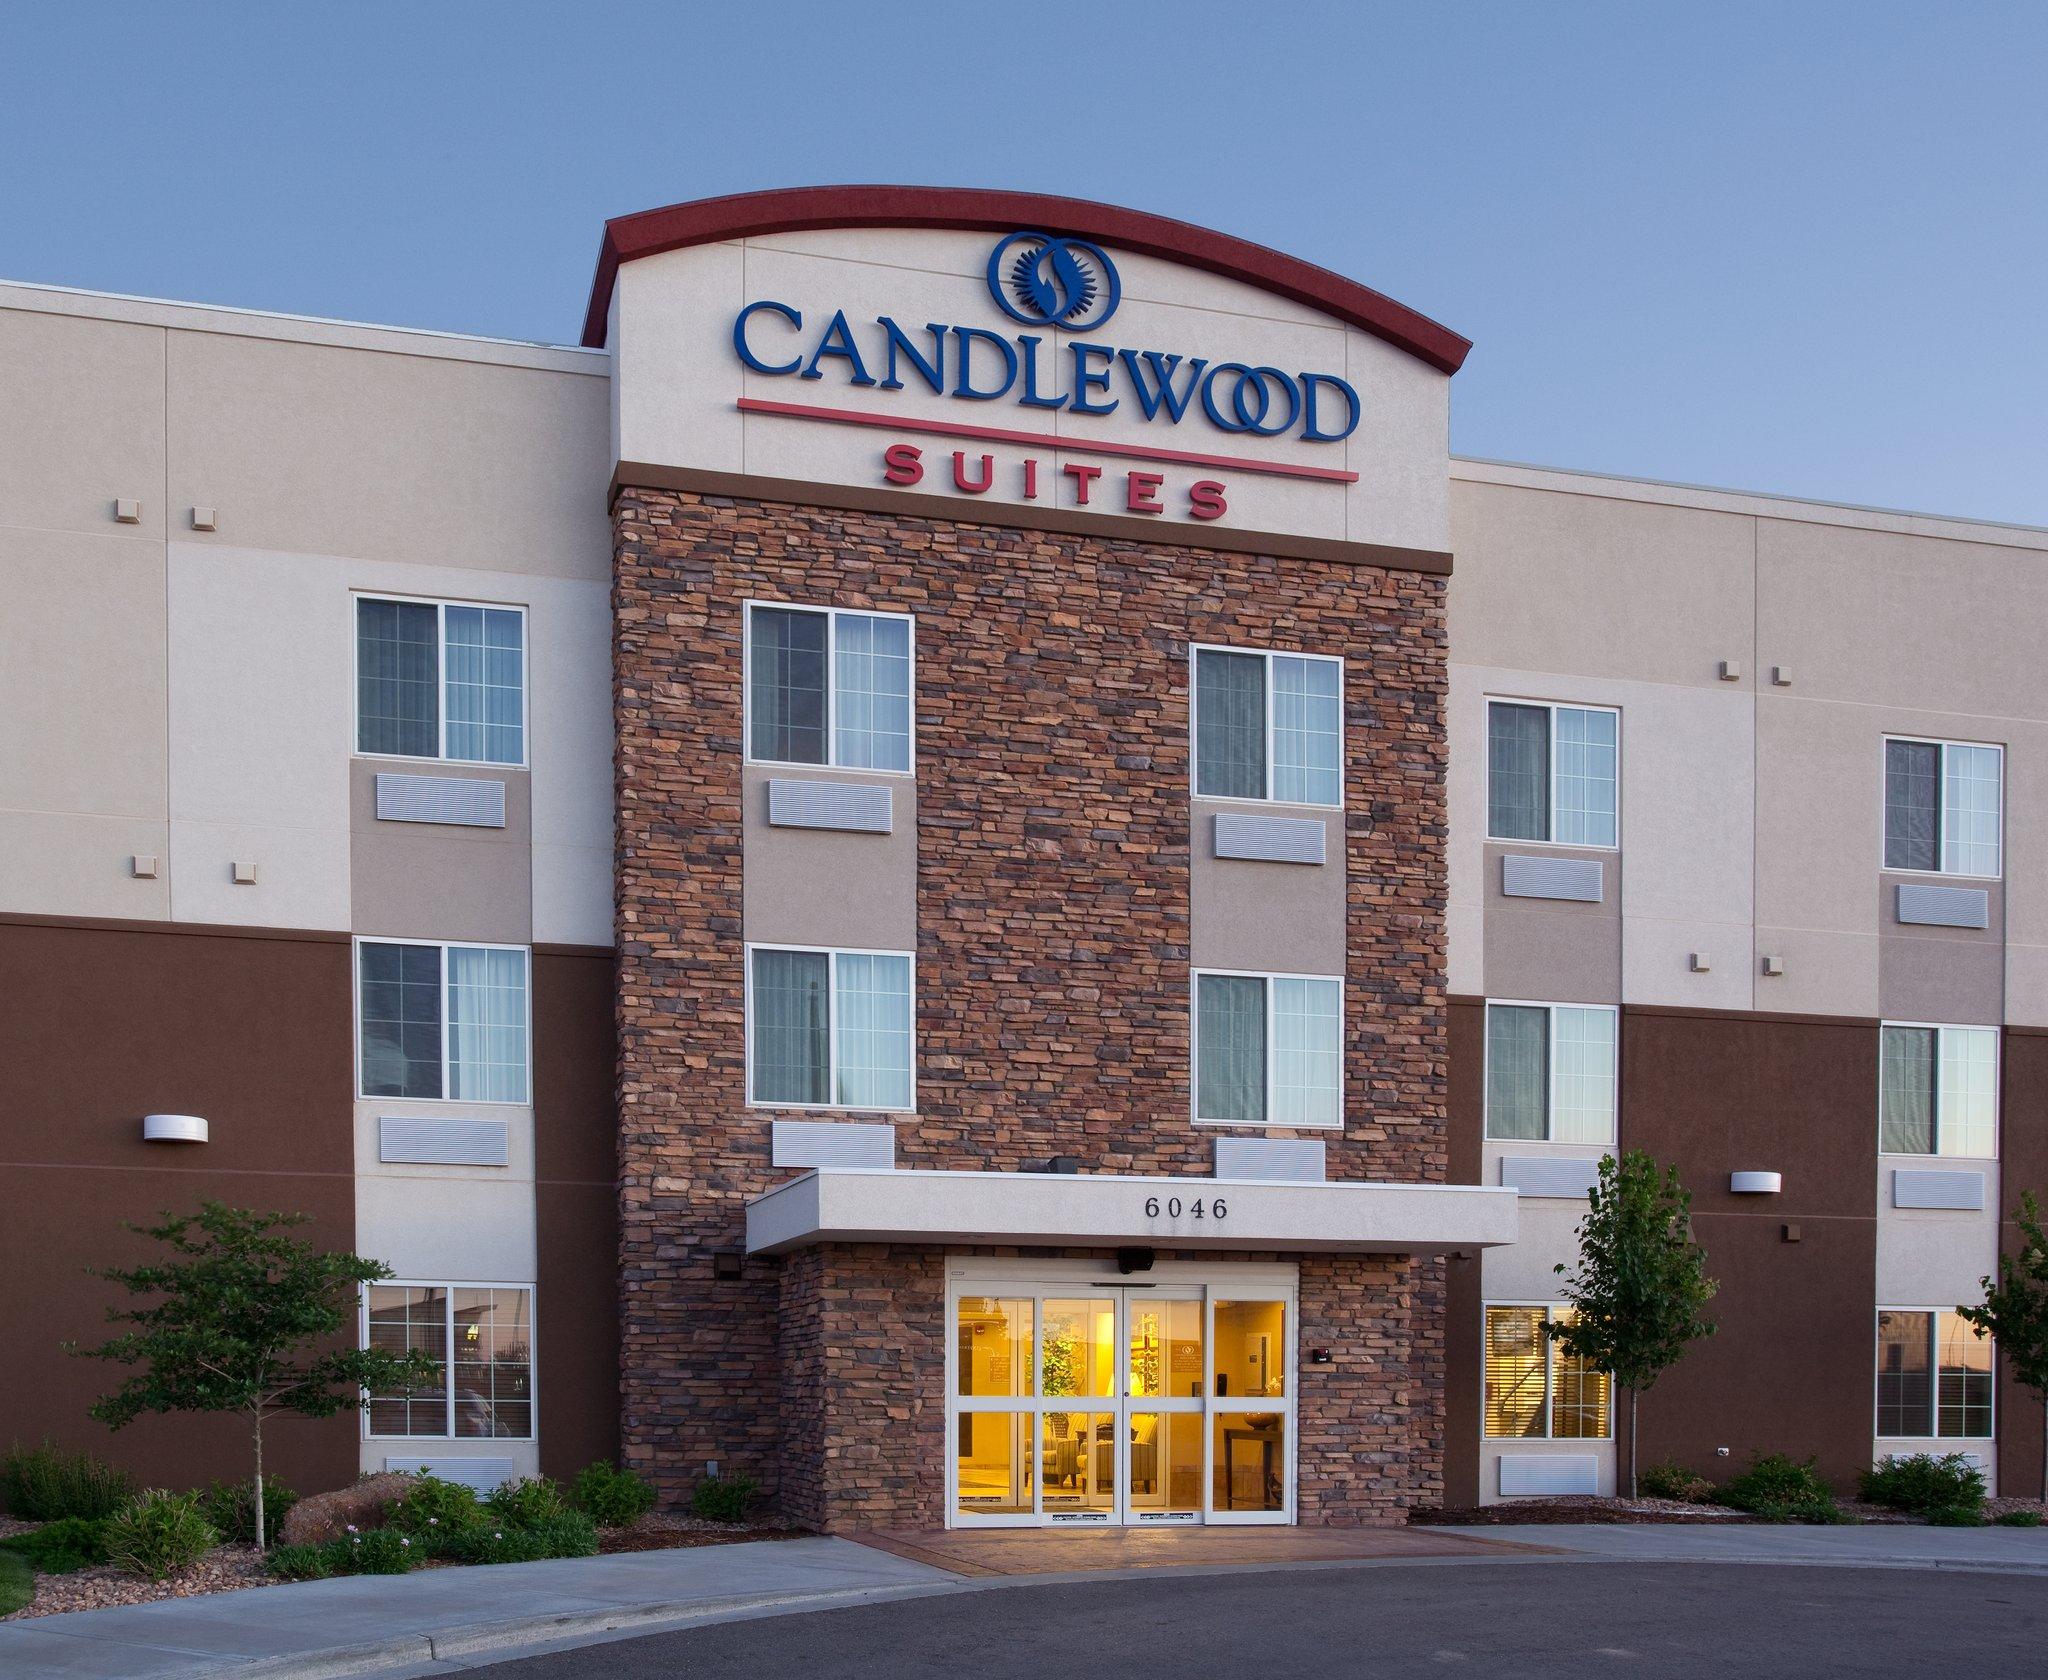 Candlewood Suites - Loveland in Loveland, CO